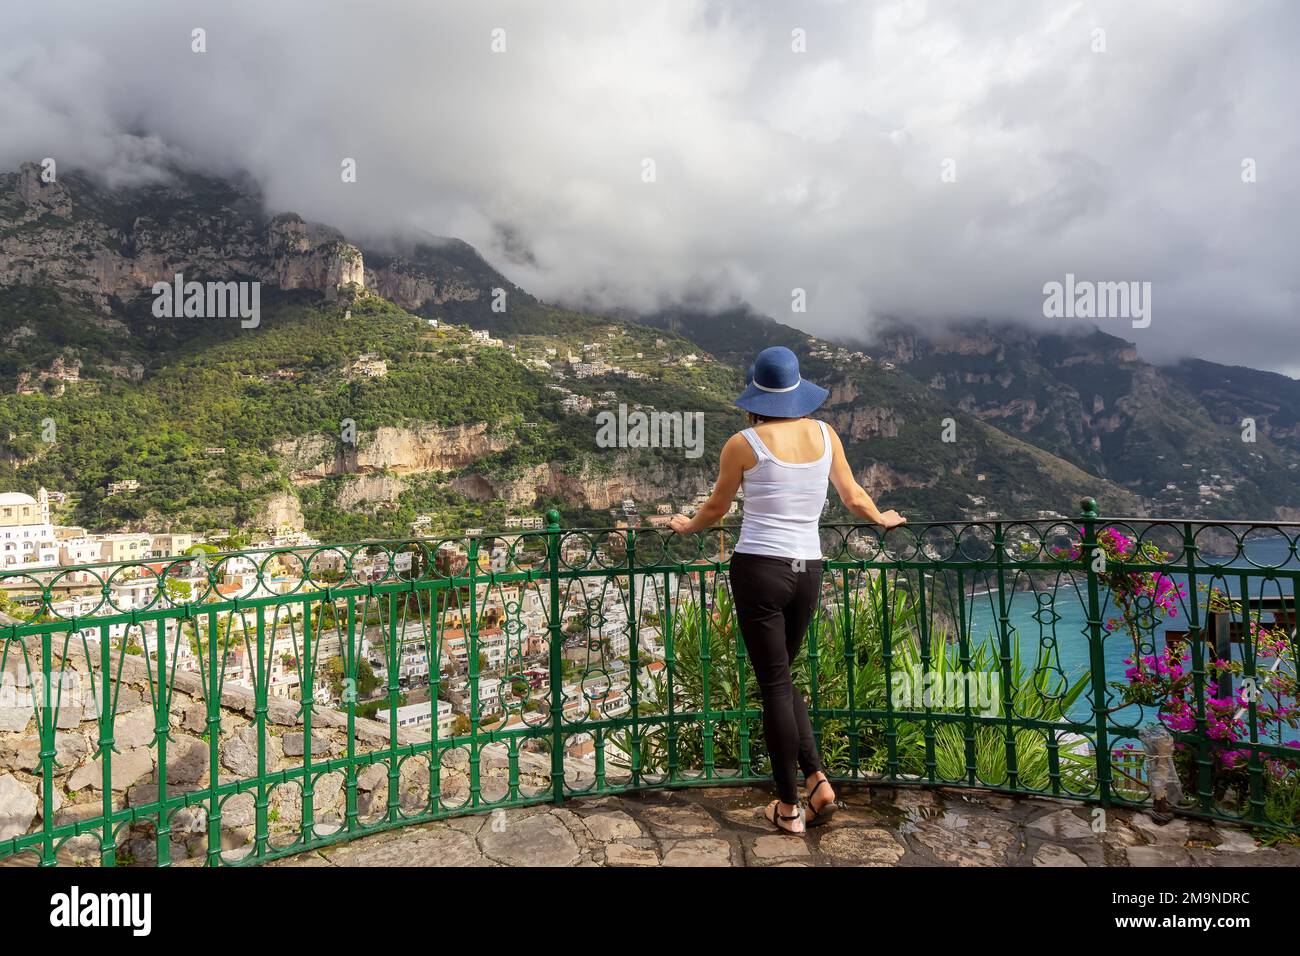 Woman tourist at a touristic town, Positano, by the Tyrrhenian Sea. Amalfi Coast, Italy Stock Photo